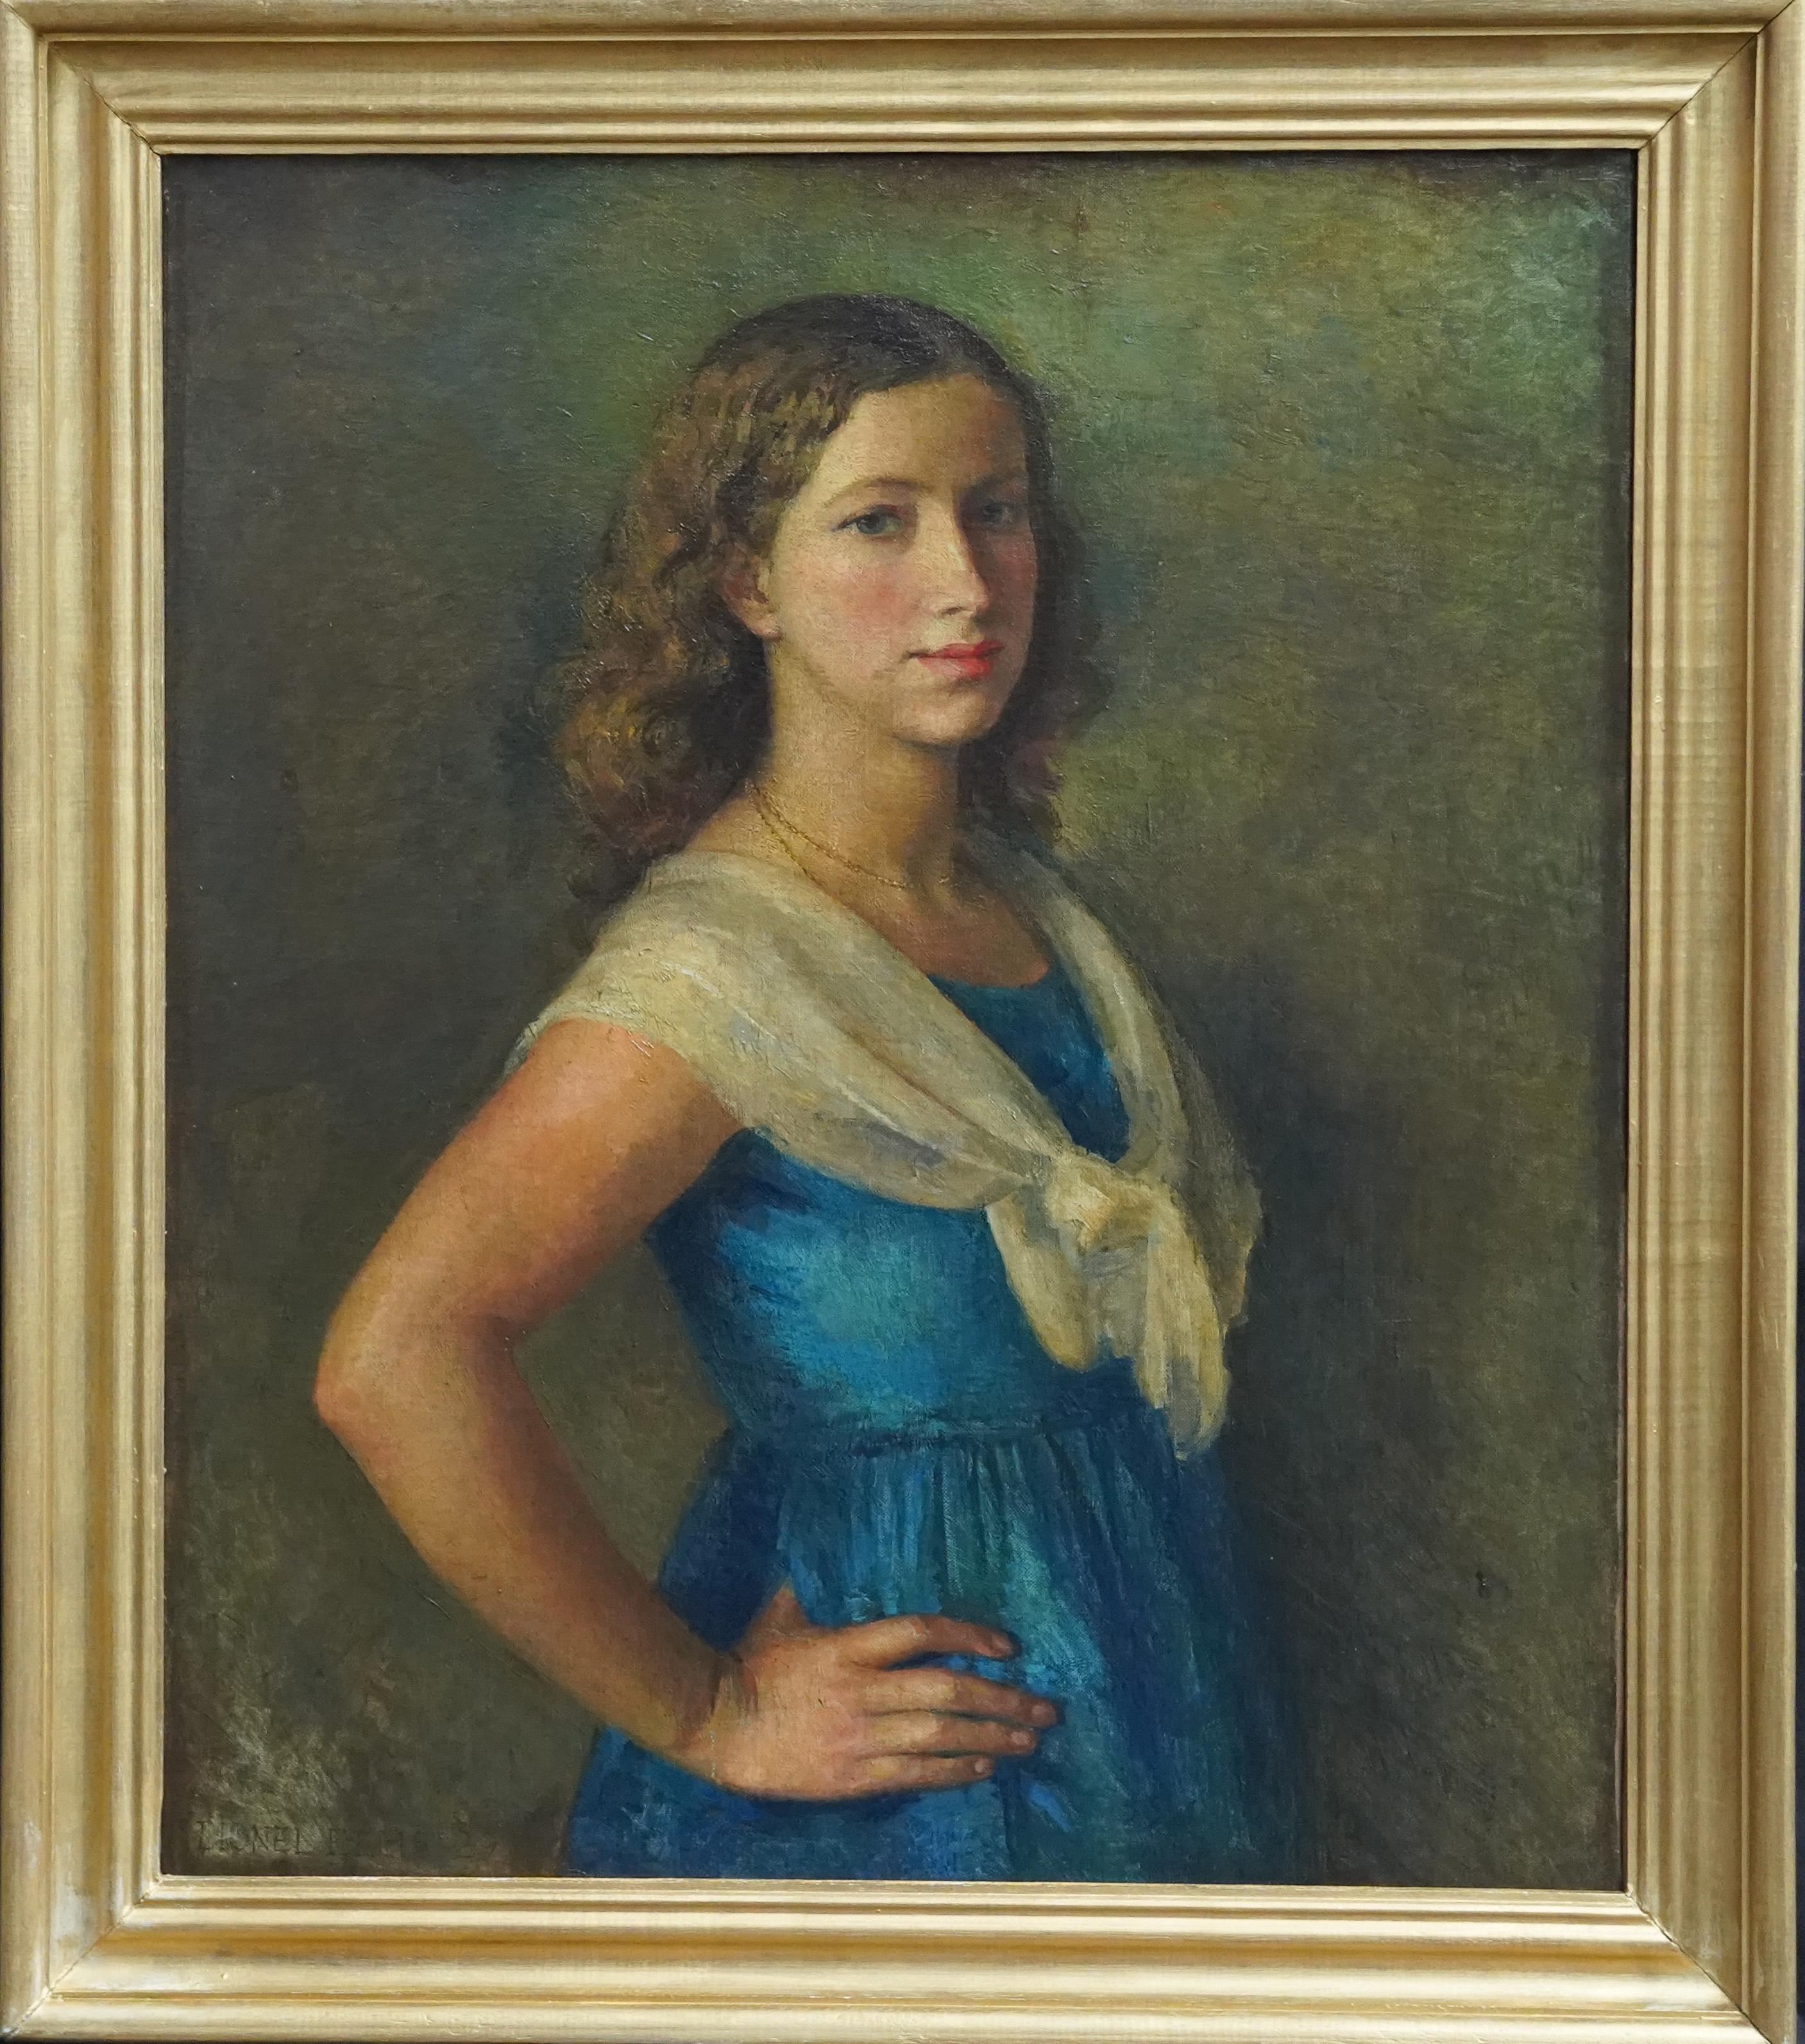 Lionel Ellis Portrait Painting - Portrait of a Girl in White Lace Shawl - British 1929 art portrait oil painting